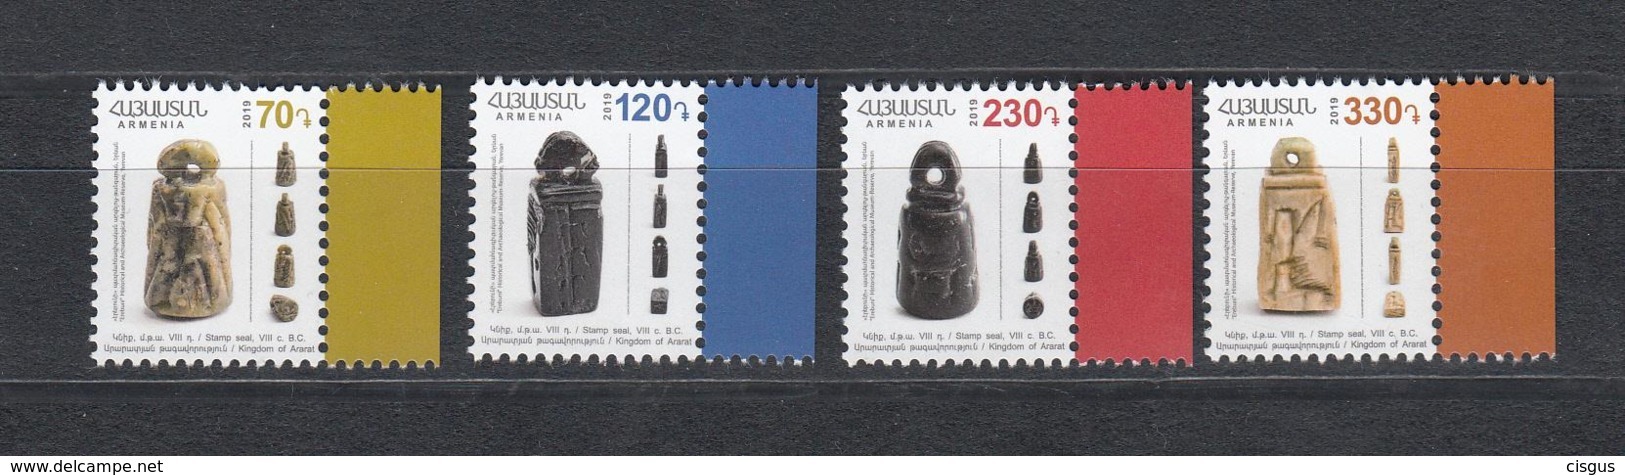 Armenia Armenien MNH** 2019 Seals Of Time Of Ararat Kingdom Definitve Mi 1105-8 - Armenien